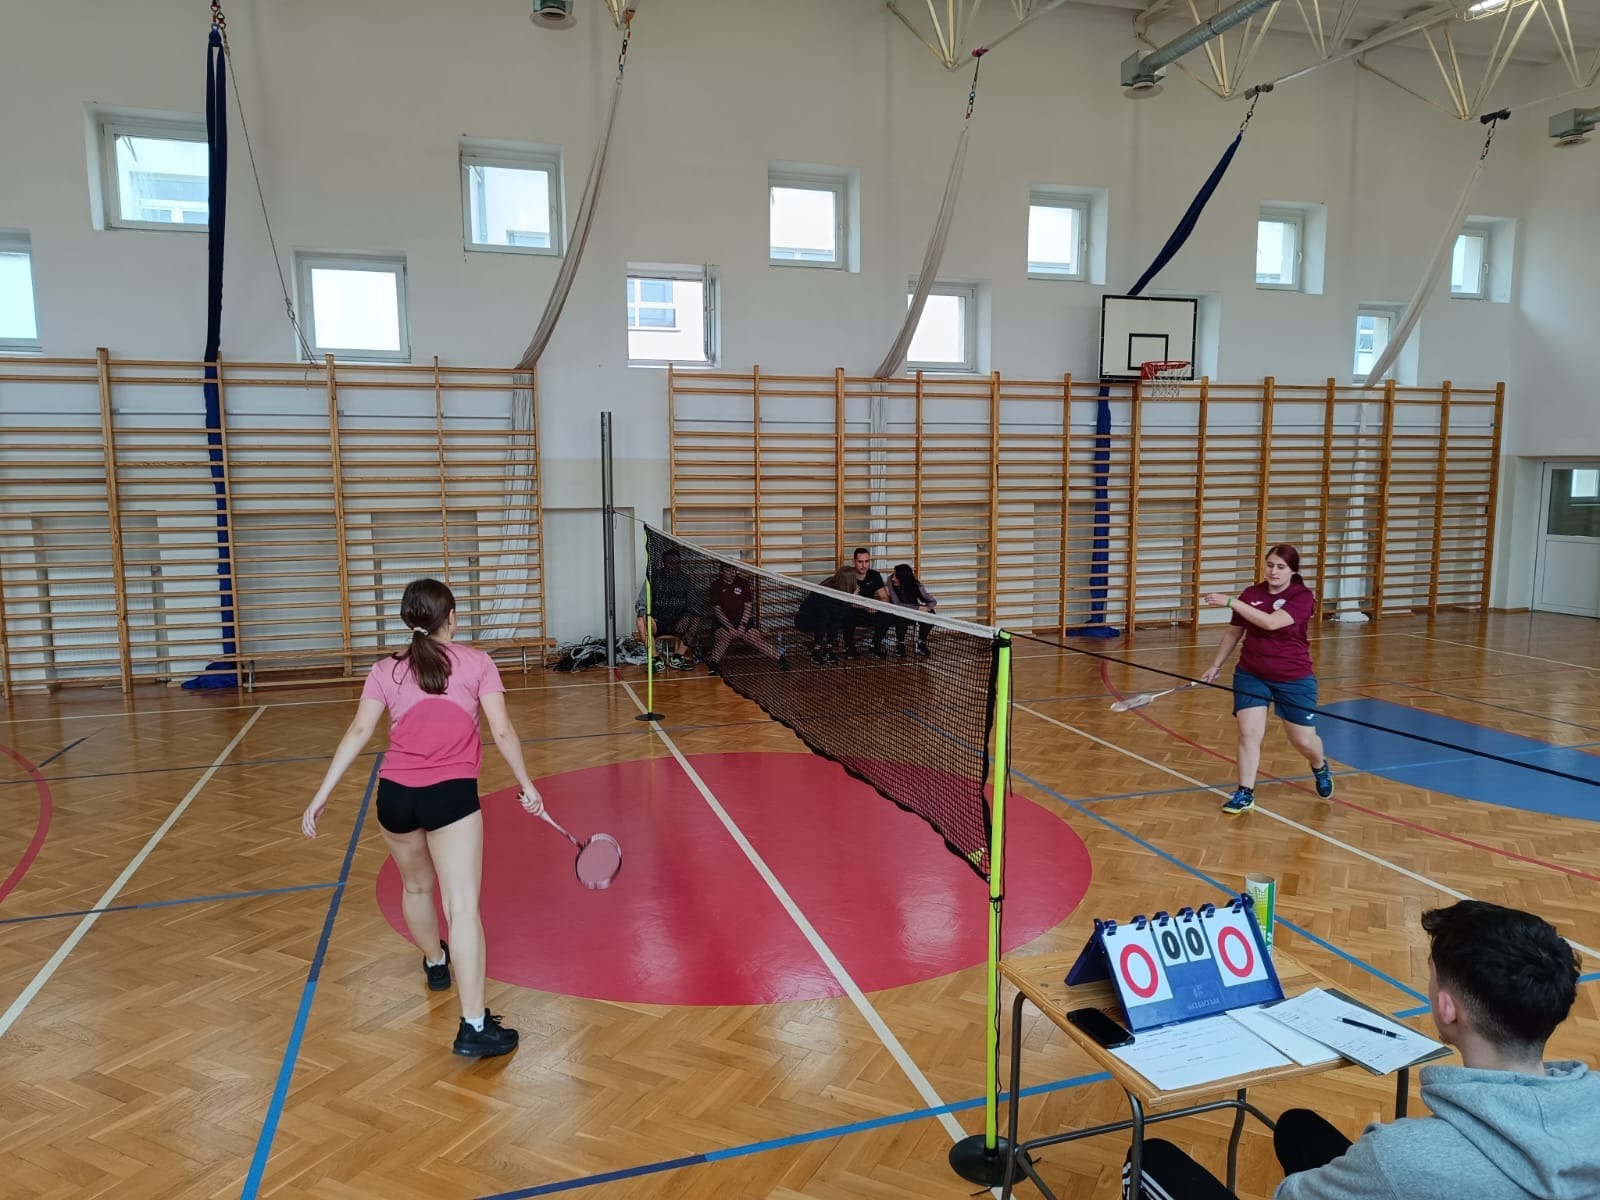 Mecz między dziewczętami w badmintona na sali gimnastycznej